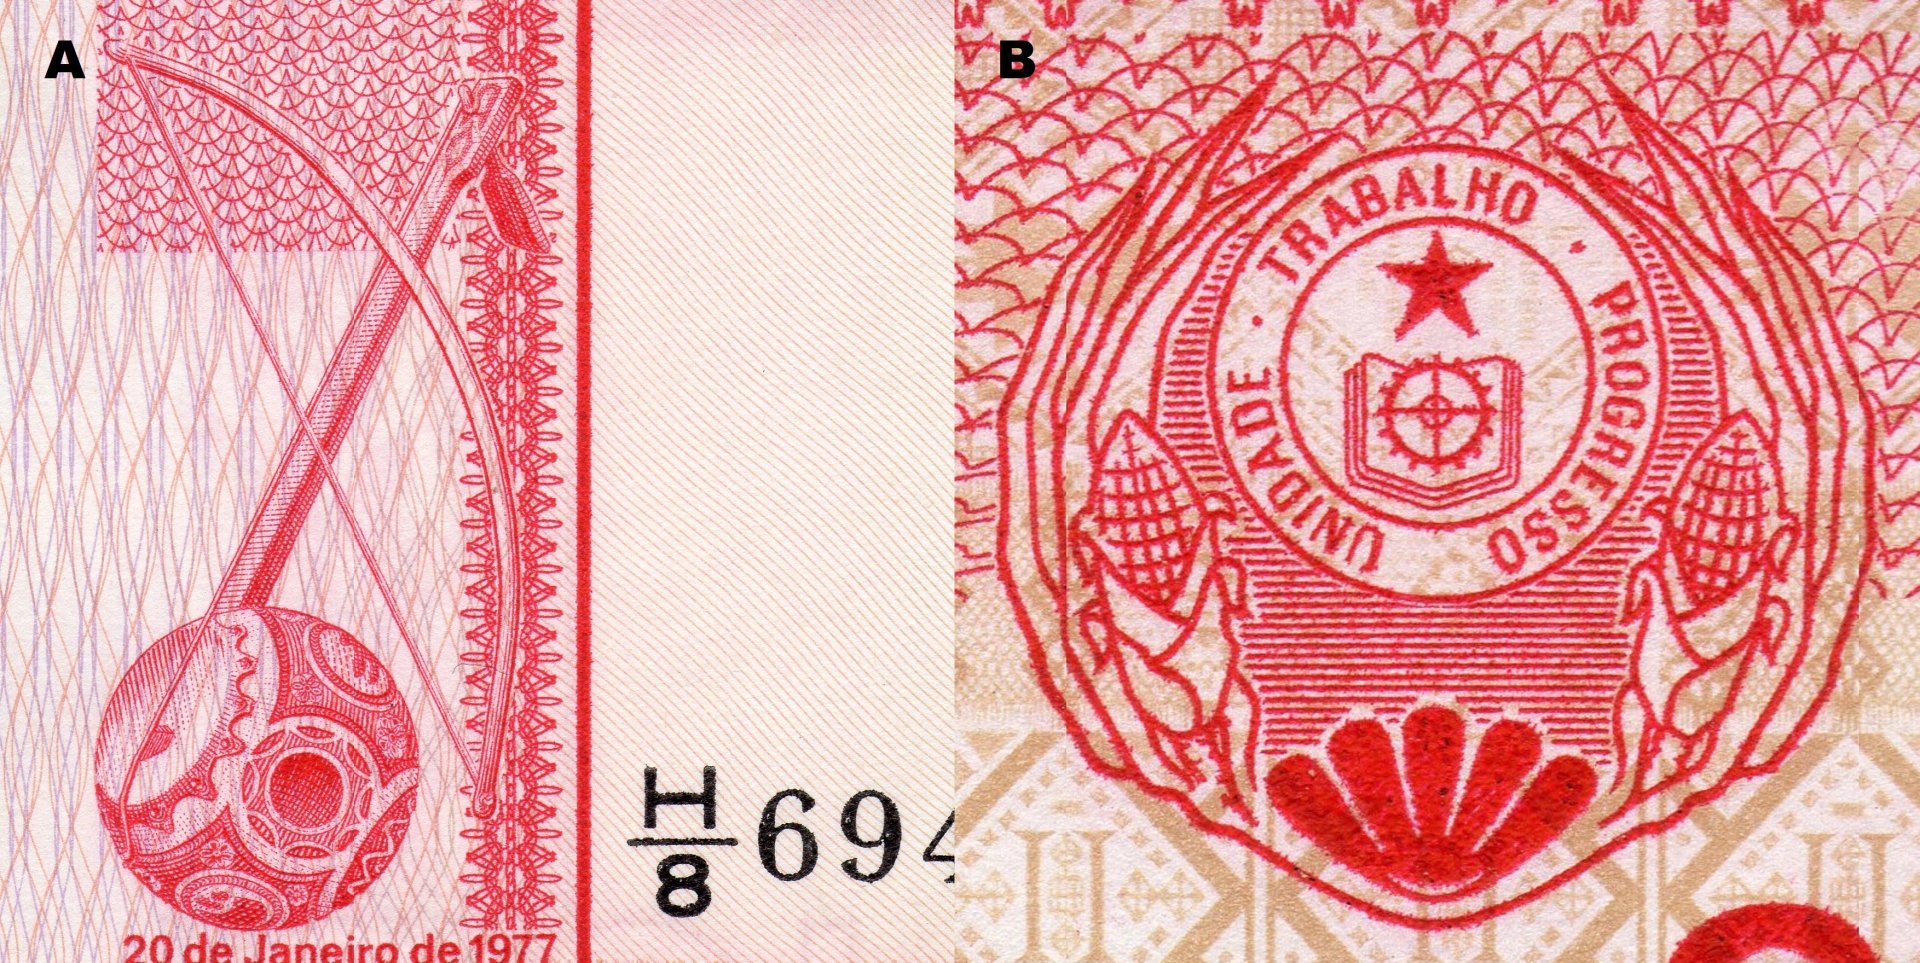 Obr. 1. A) Detail lidového strunného nástroje "cimboa". B) Státní znak Cabo Verde z roku 1975.